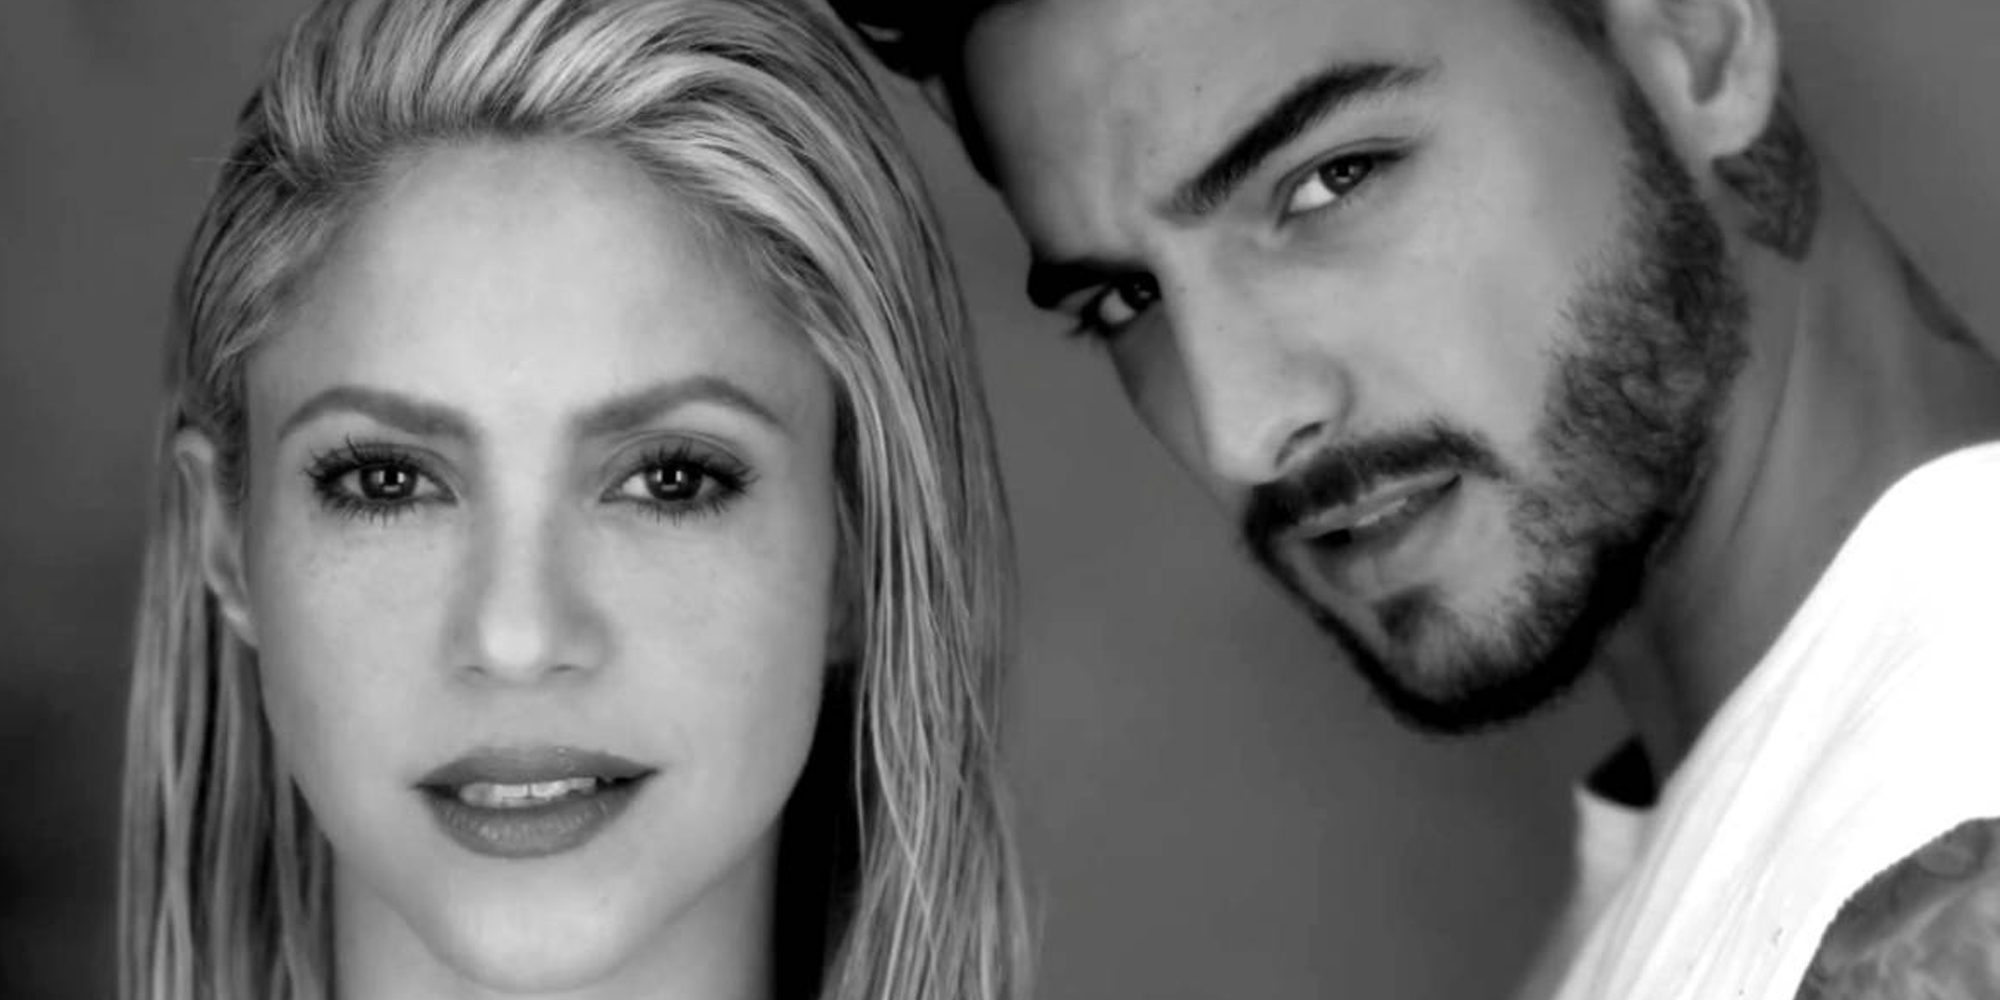 Shakira y Maluma: Empapados y sexys en el videoclip de 'Trap'